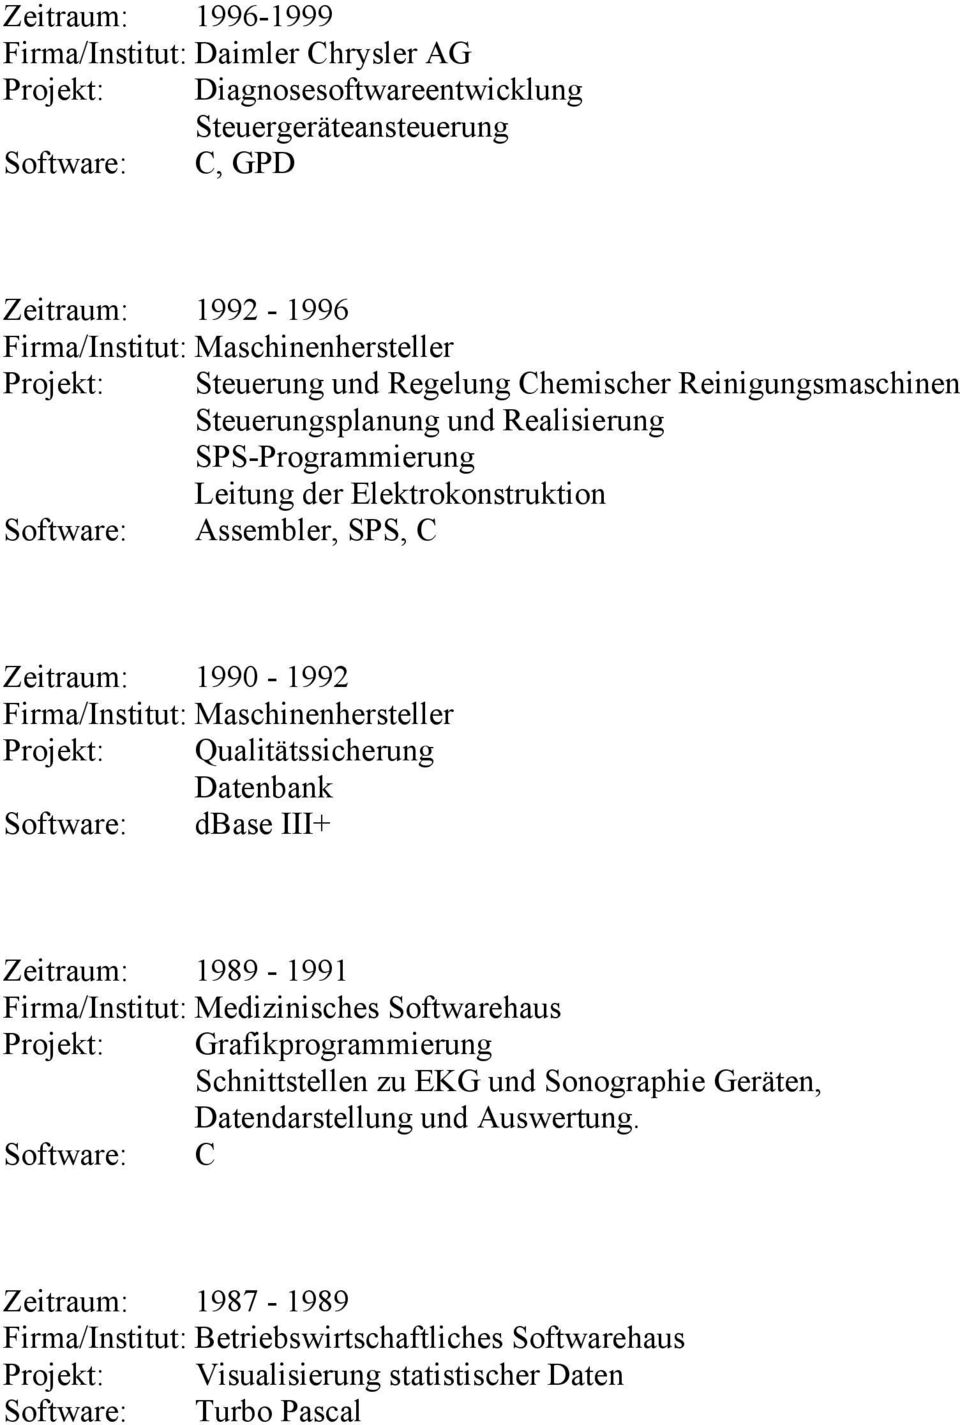 Qualitätssicherung Datenbank Software: dbase III+ Zeitraum: 1989-1991 Firma/Institut: Medizinisches Softwarehaus Projekt: Grafikprogrammierung Schnittstellen zu EKG und